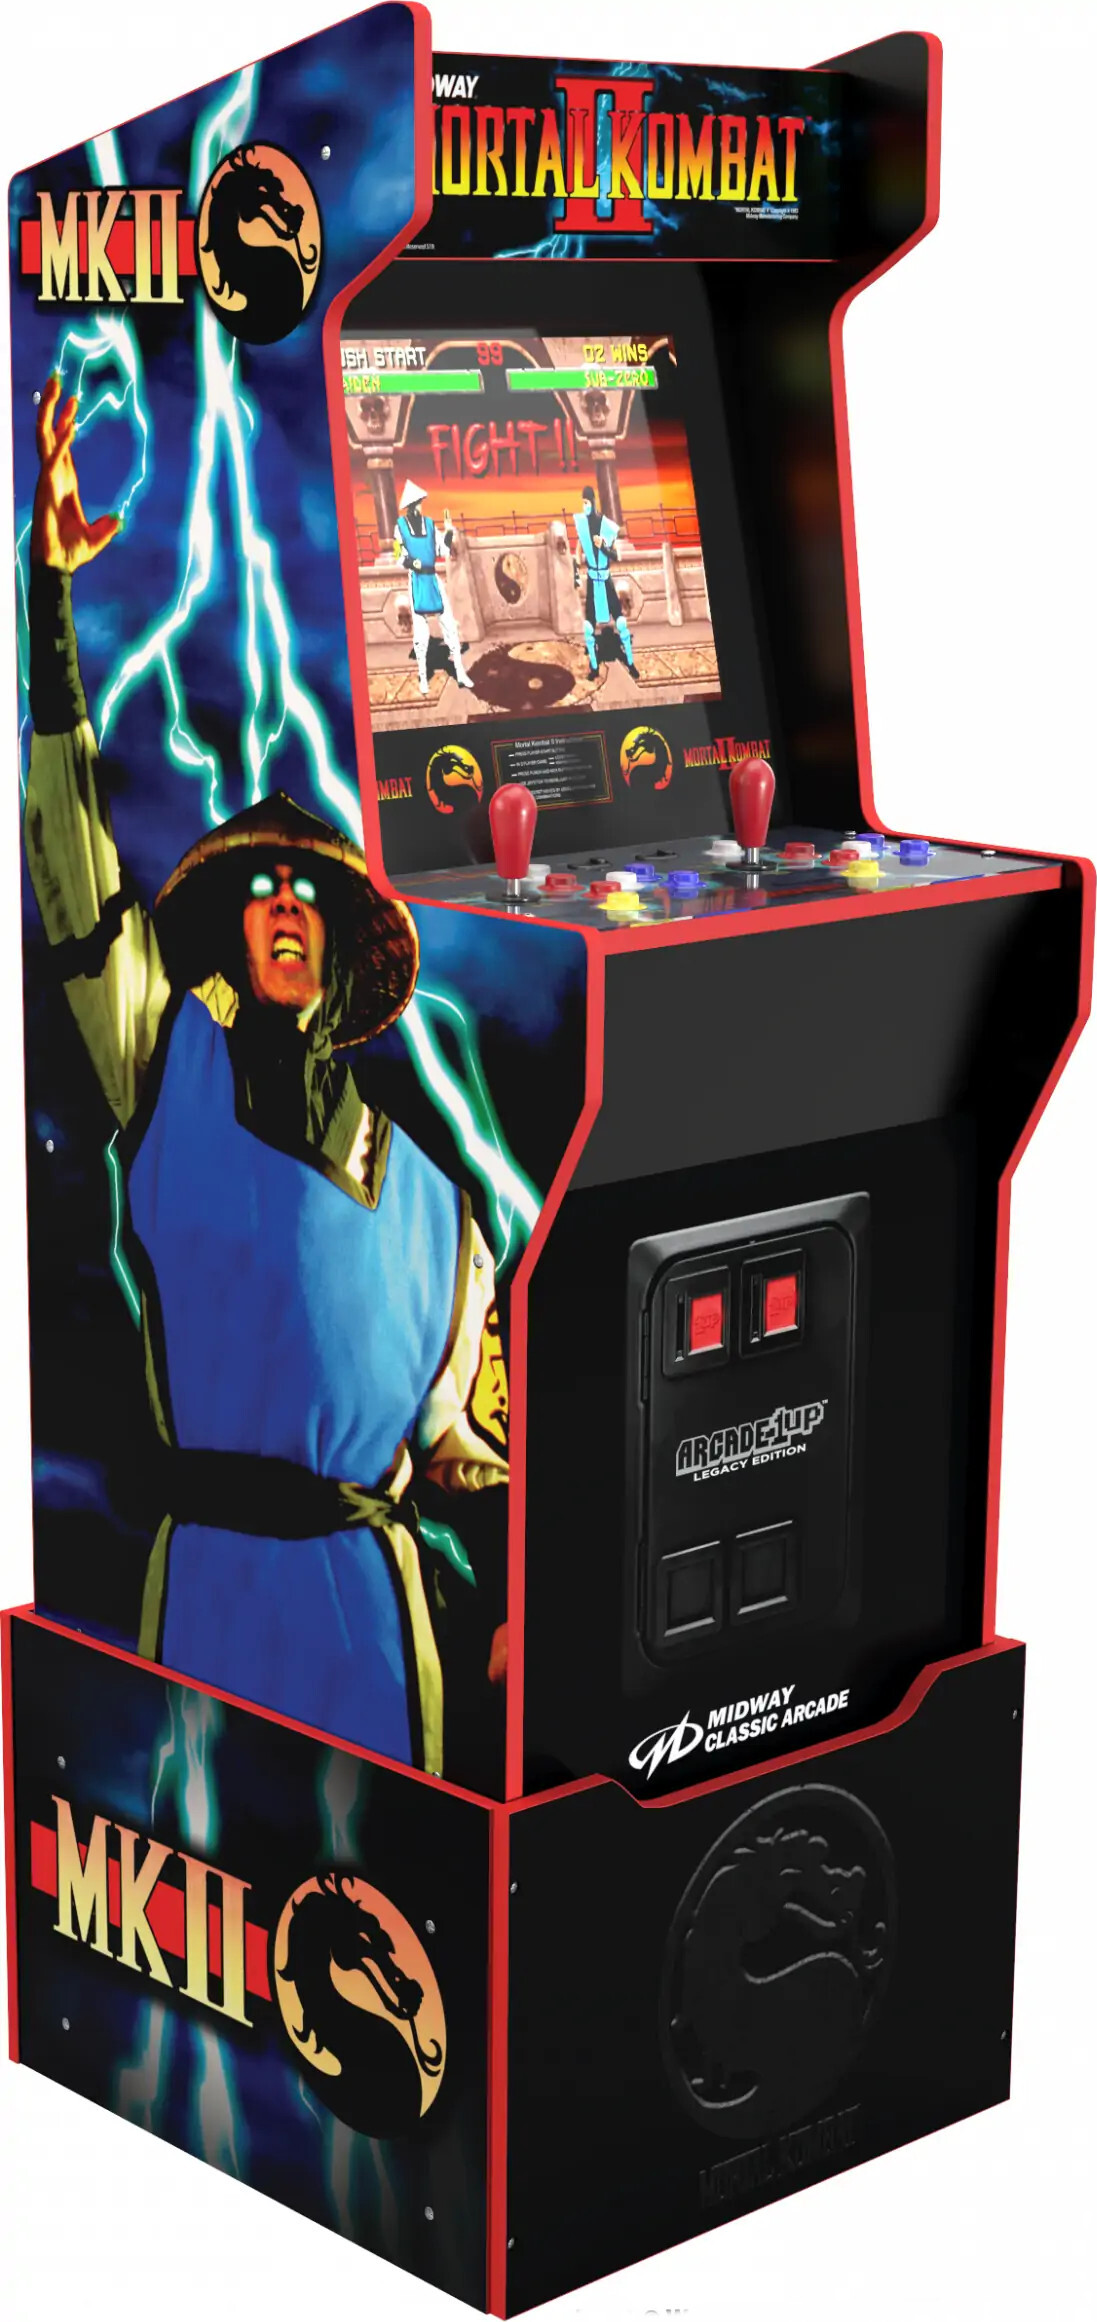 Billede af Arcade1up - Mortal Kombat Arkadespil - Midway Legacy